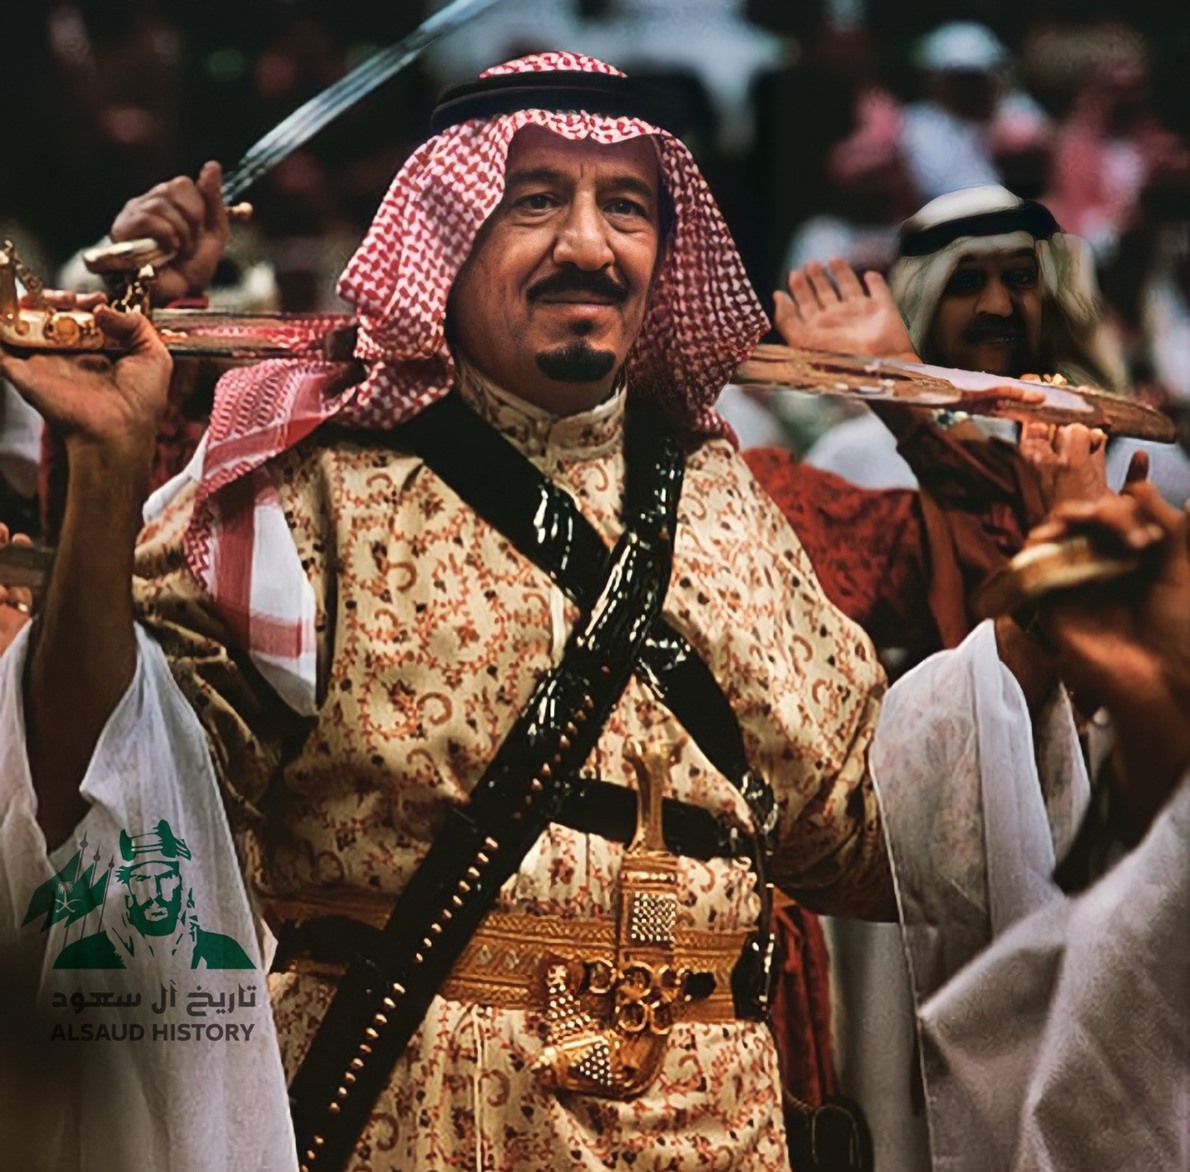 شاهد صورة نادرة للملك سلمان وهو يؤدي رقصة العرضة السعودية المصريون